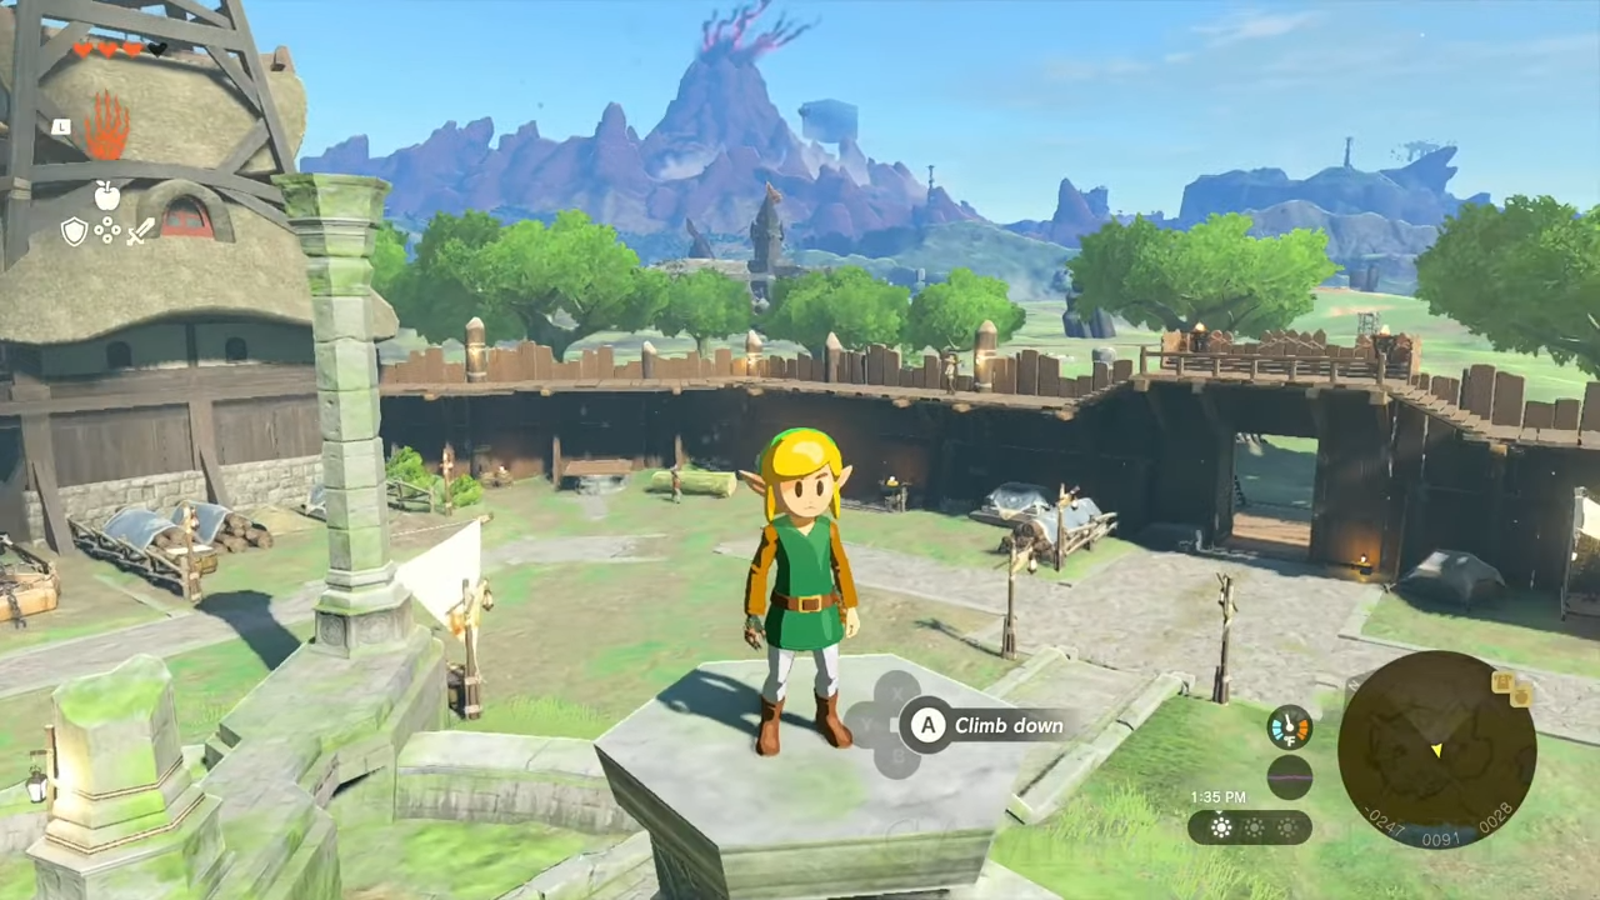 Video Game The Legend of Zelda: Link's Awakening HD Wallpaper